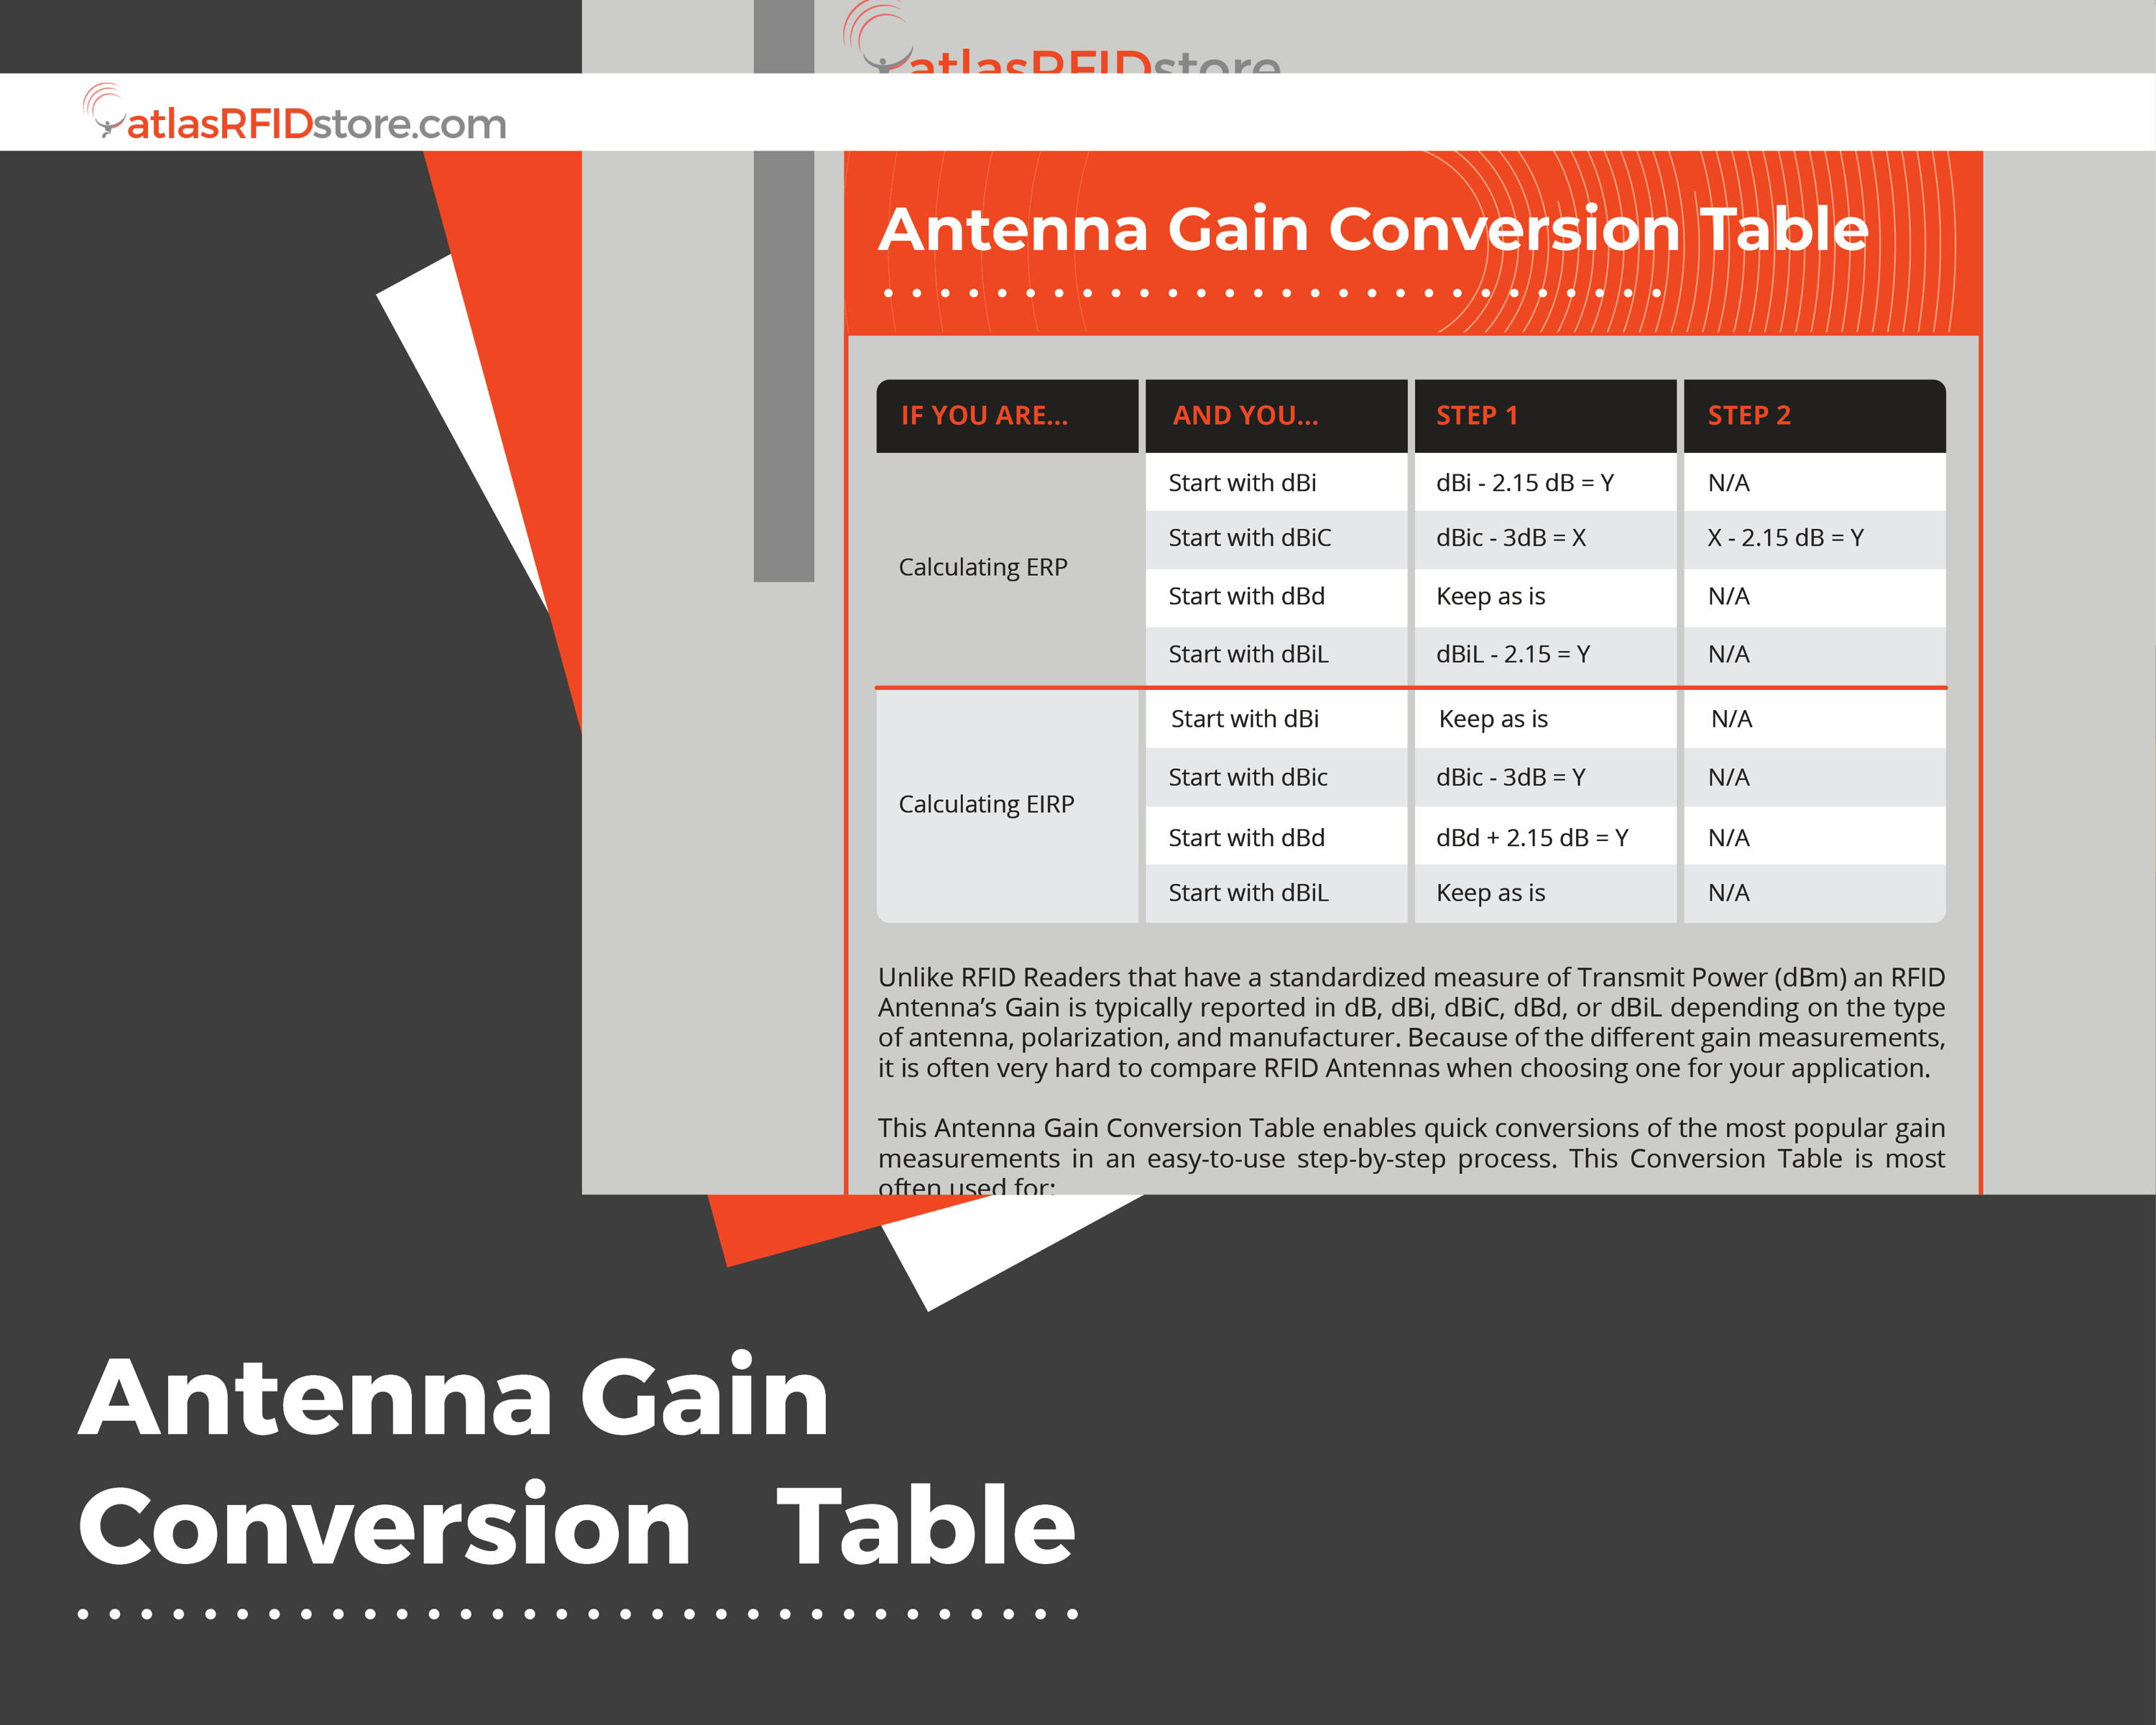 RFID Antenna Gain Conversion Table